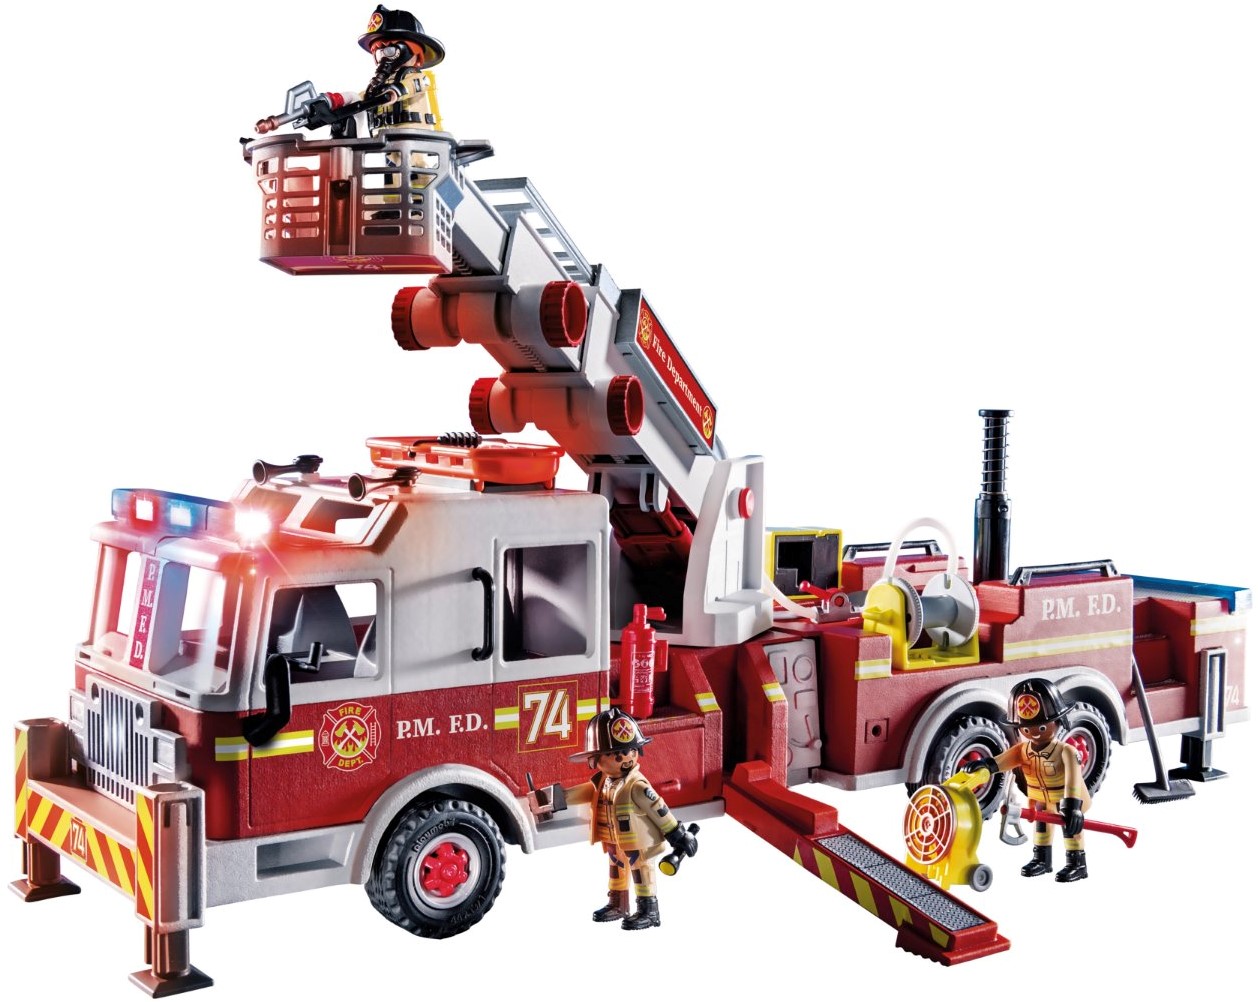 Playmobil City Action - Camion de pompiers — nauticamilanonline